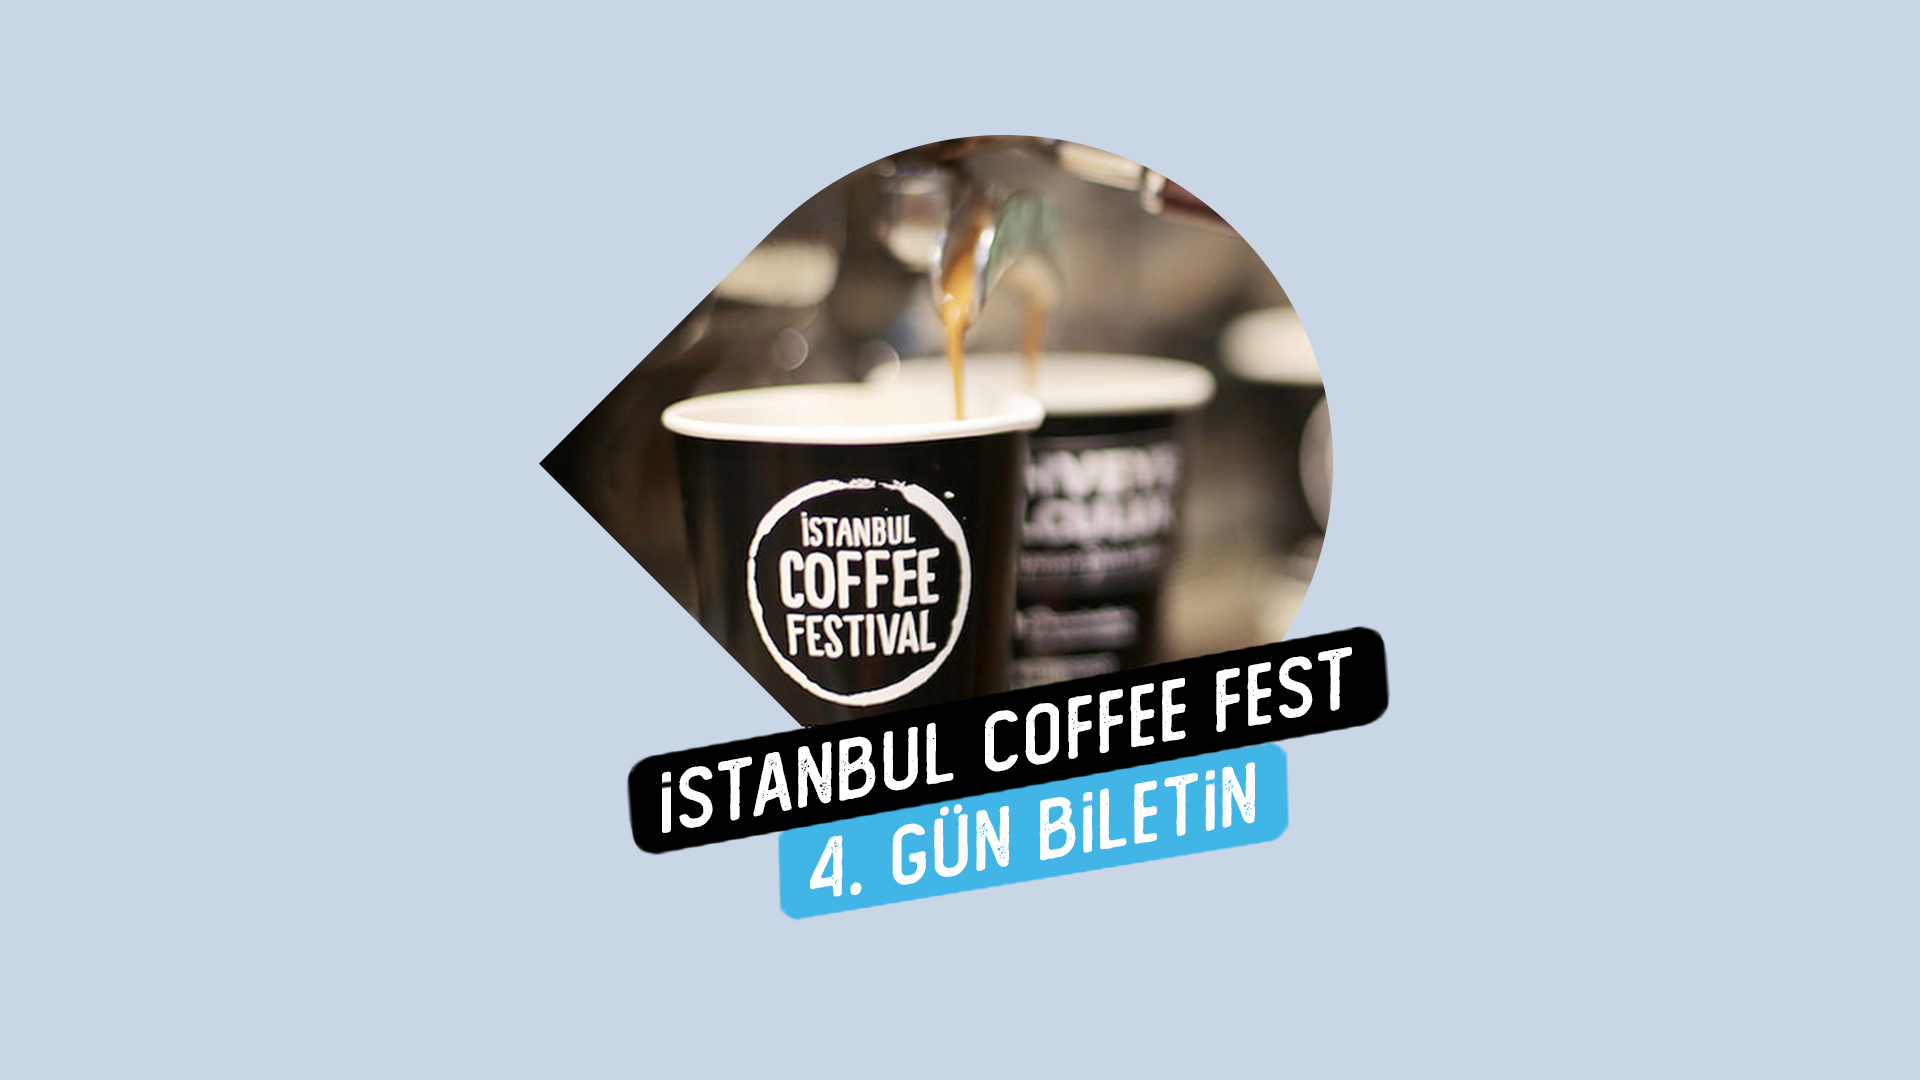 BILET Token Kilitle, İstanbul Coffee Festivali 4. Gün Katılım Biletine hemen sahip ol!